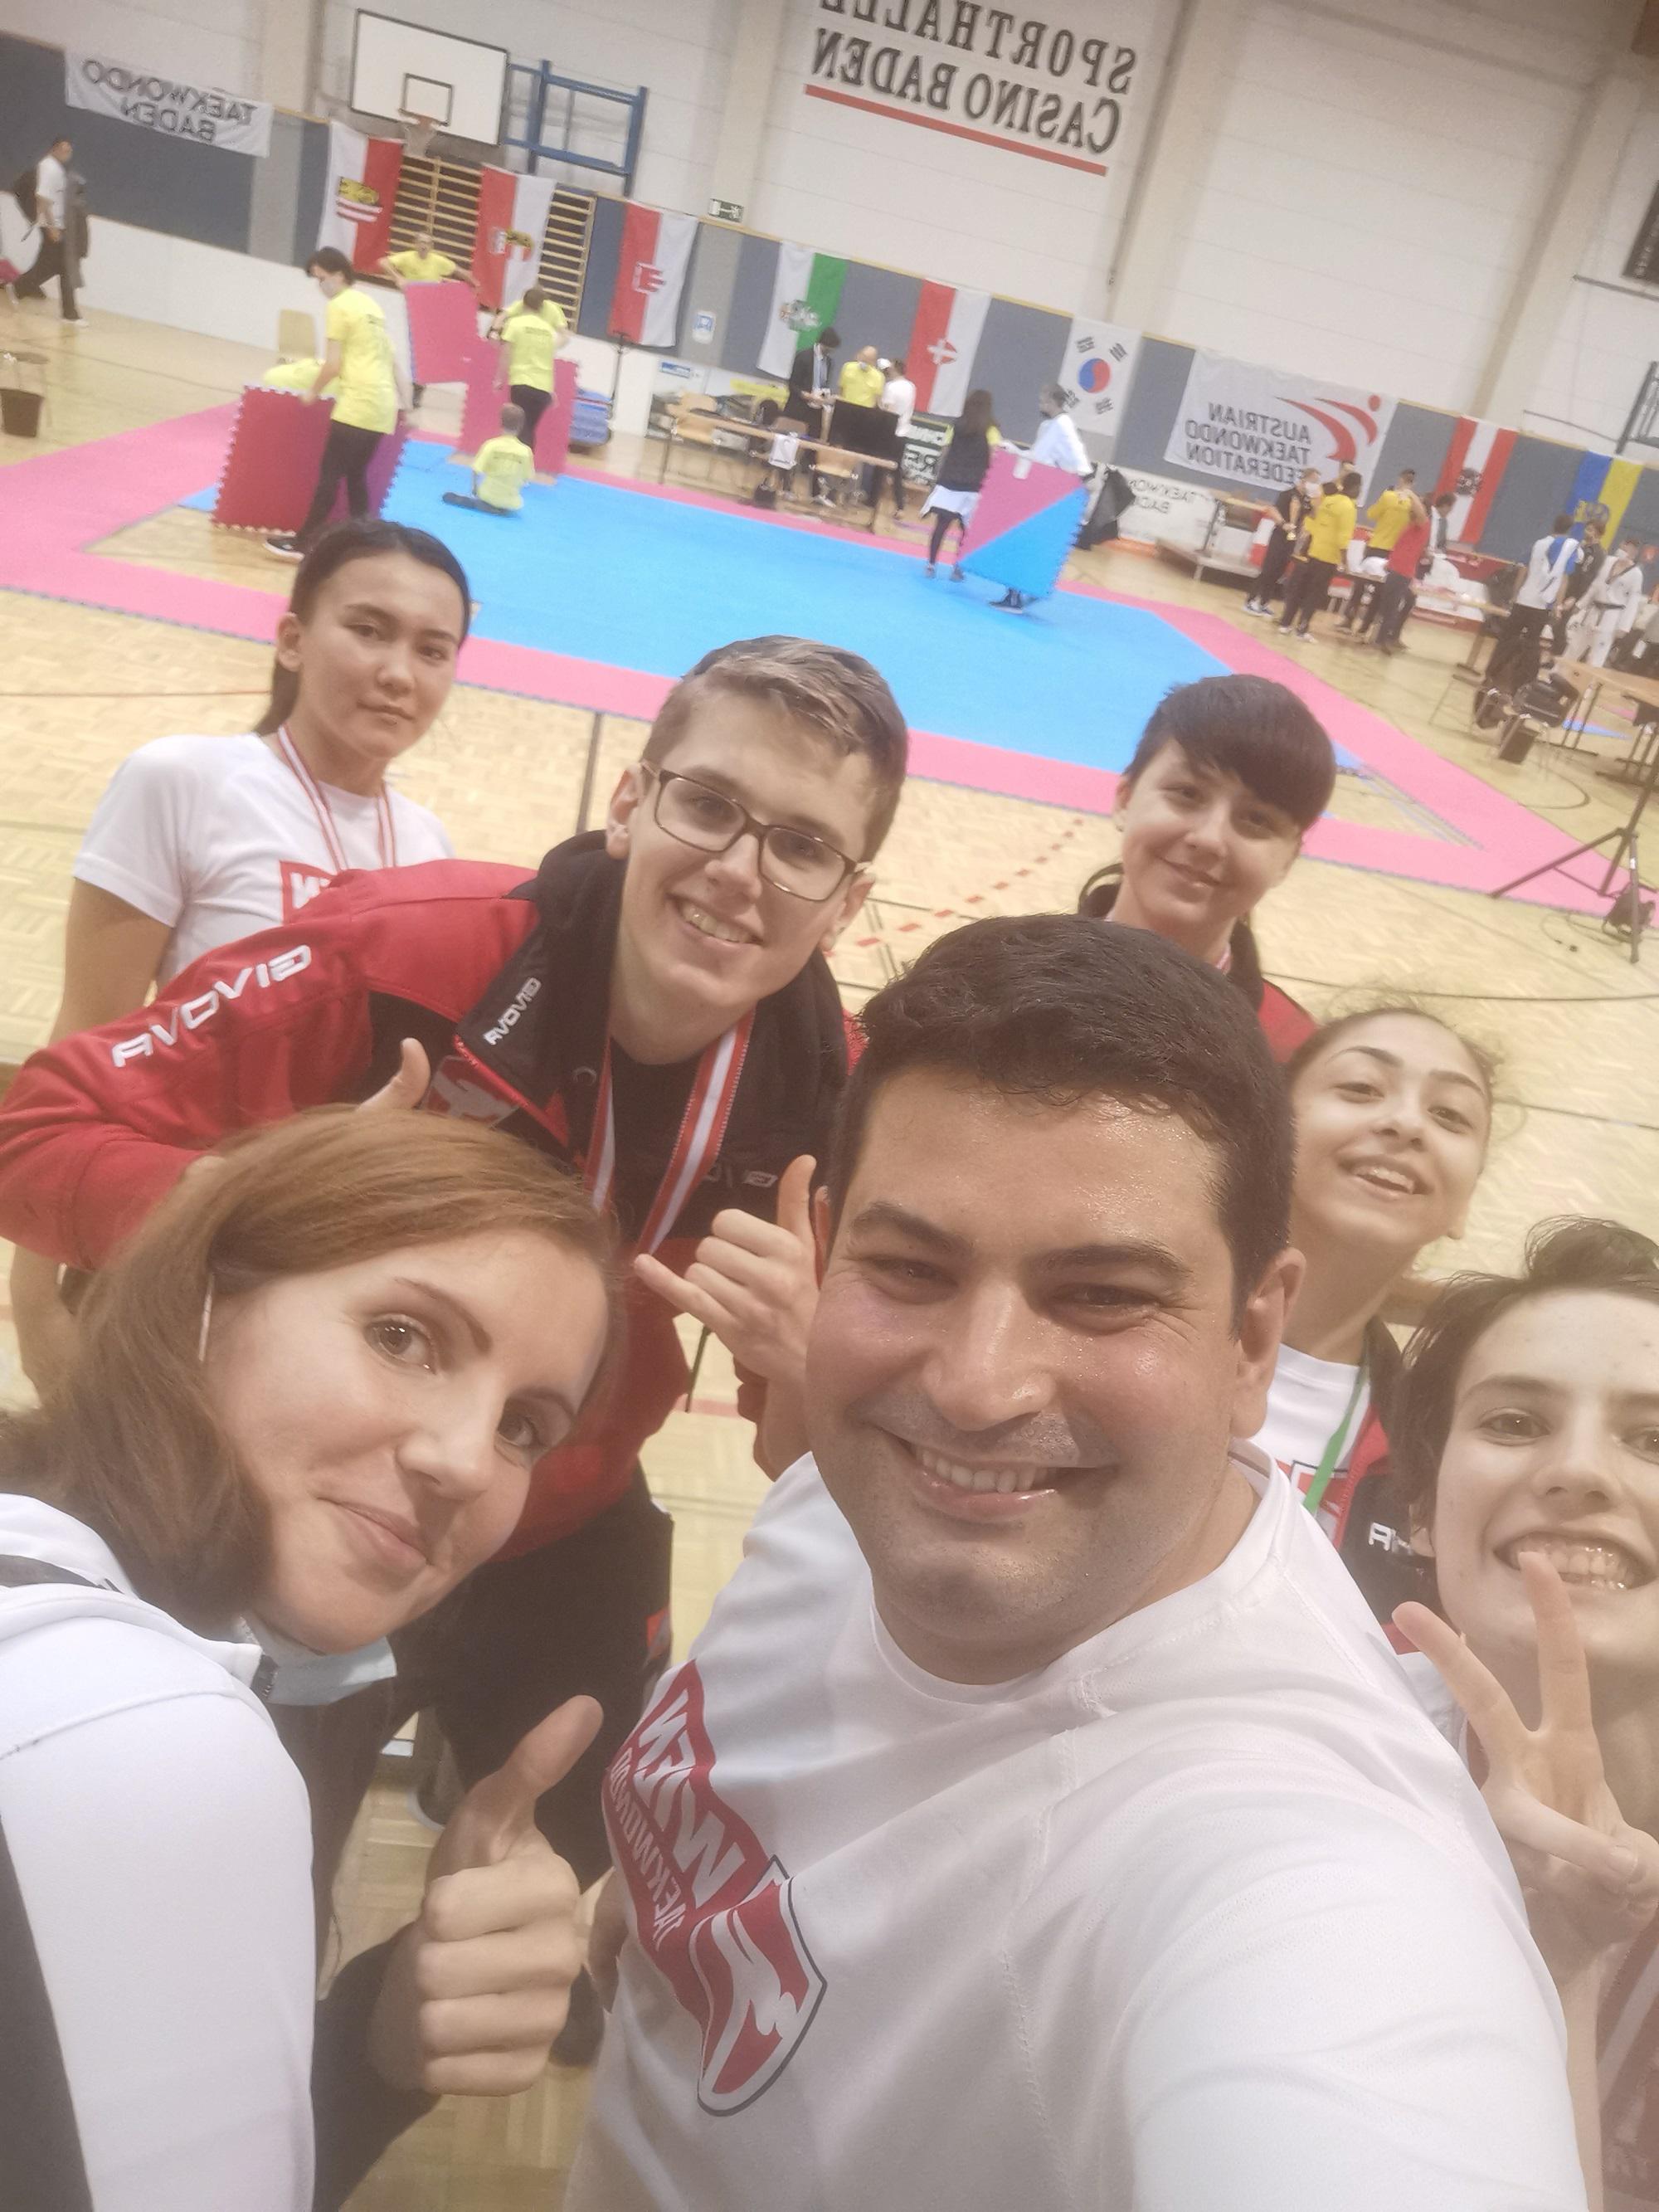 Wien Taekwondo Centre, Auf der Schmelz 10 in Wien